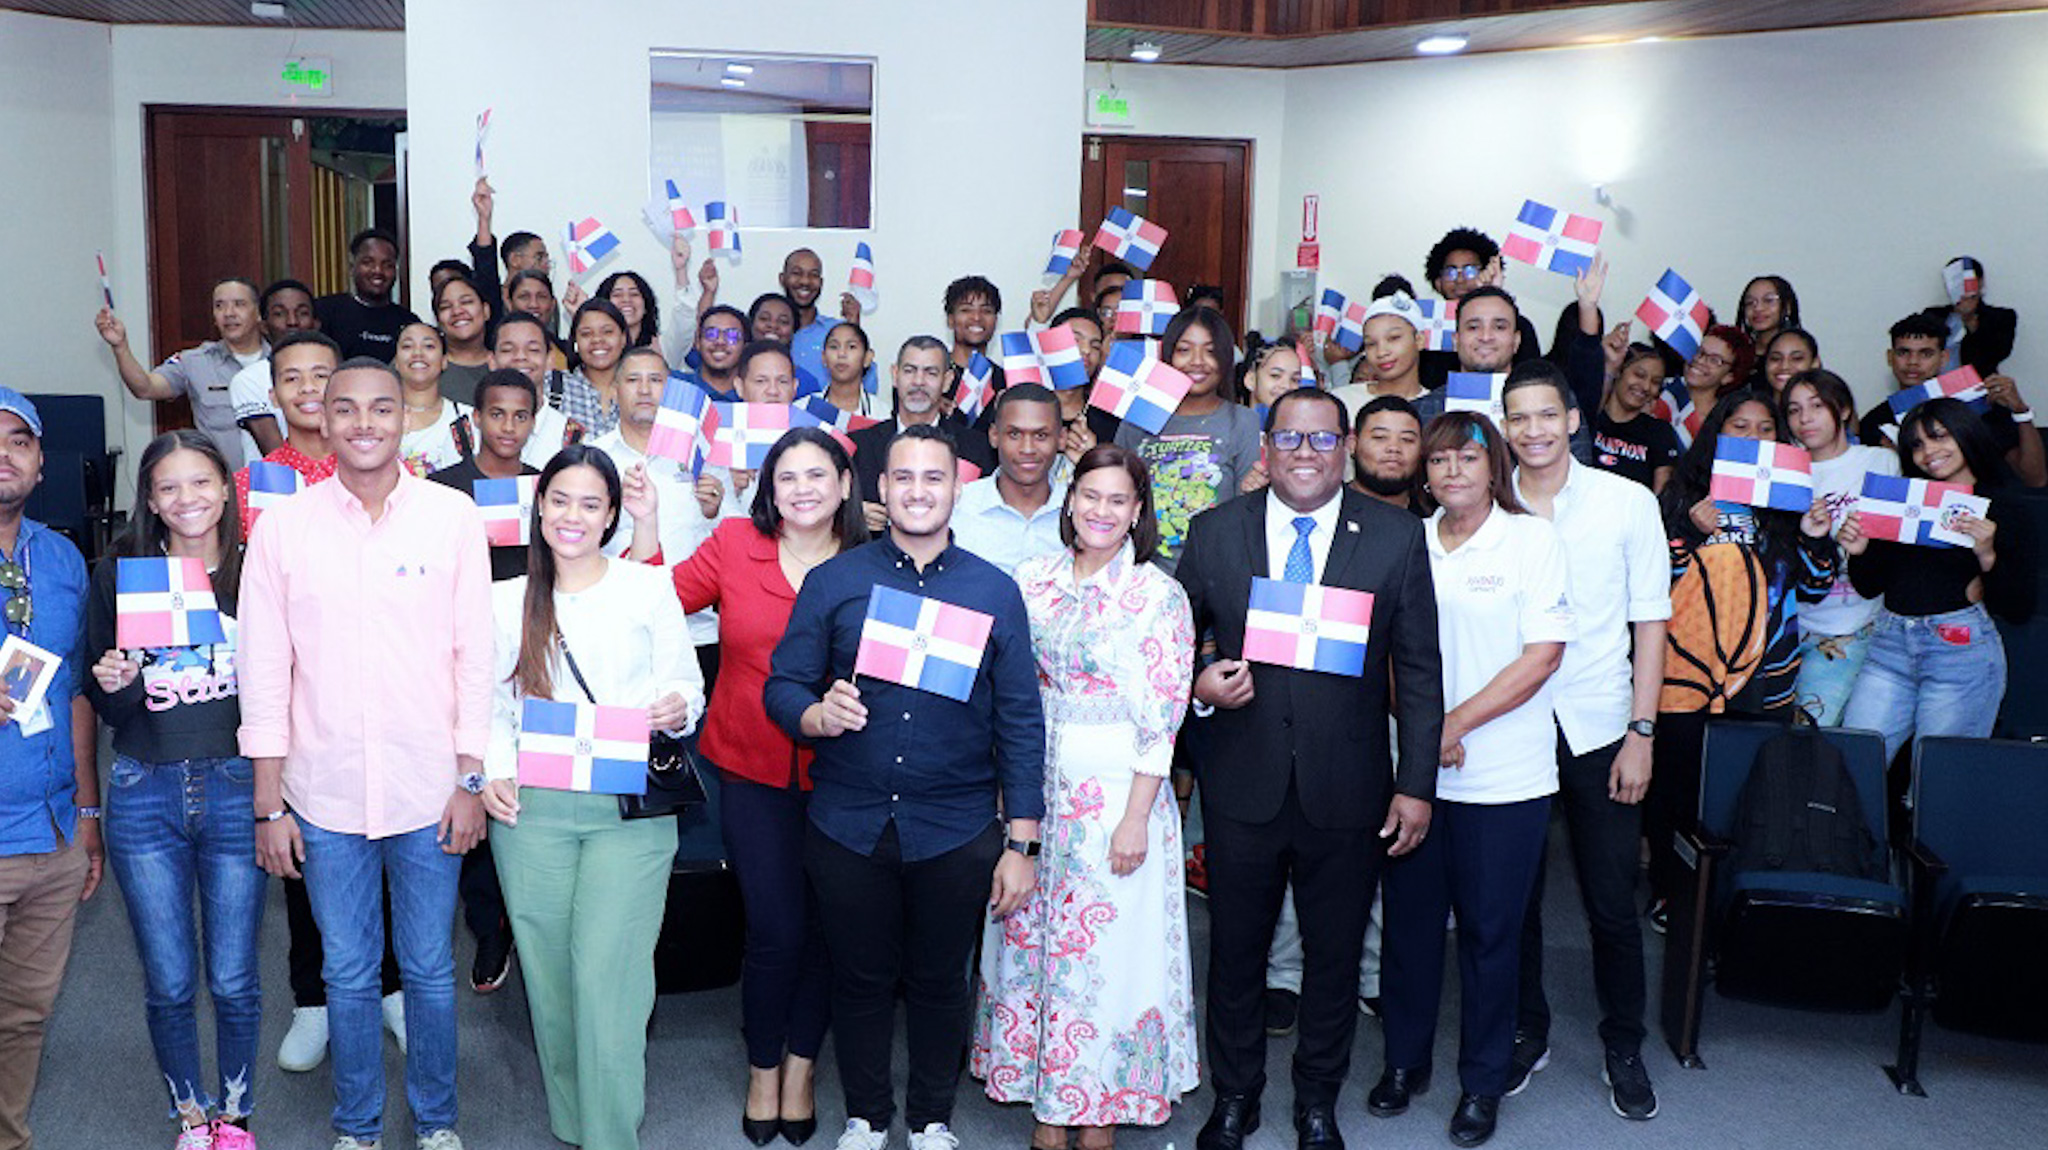 REPÚBLICA DOMINICANA: Ministerio de la Juventud celebra con éxito Semana Patria de la Juventud